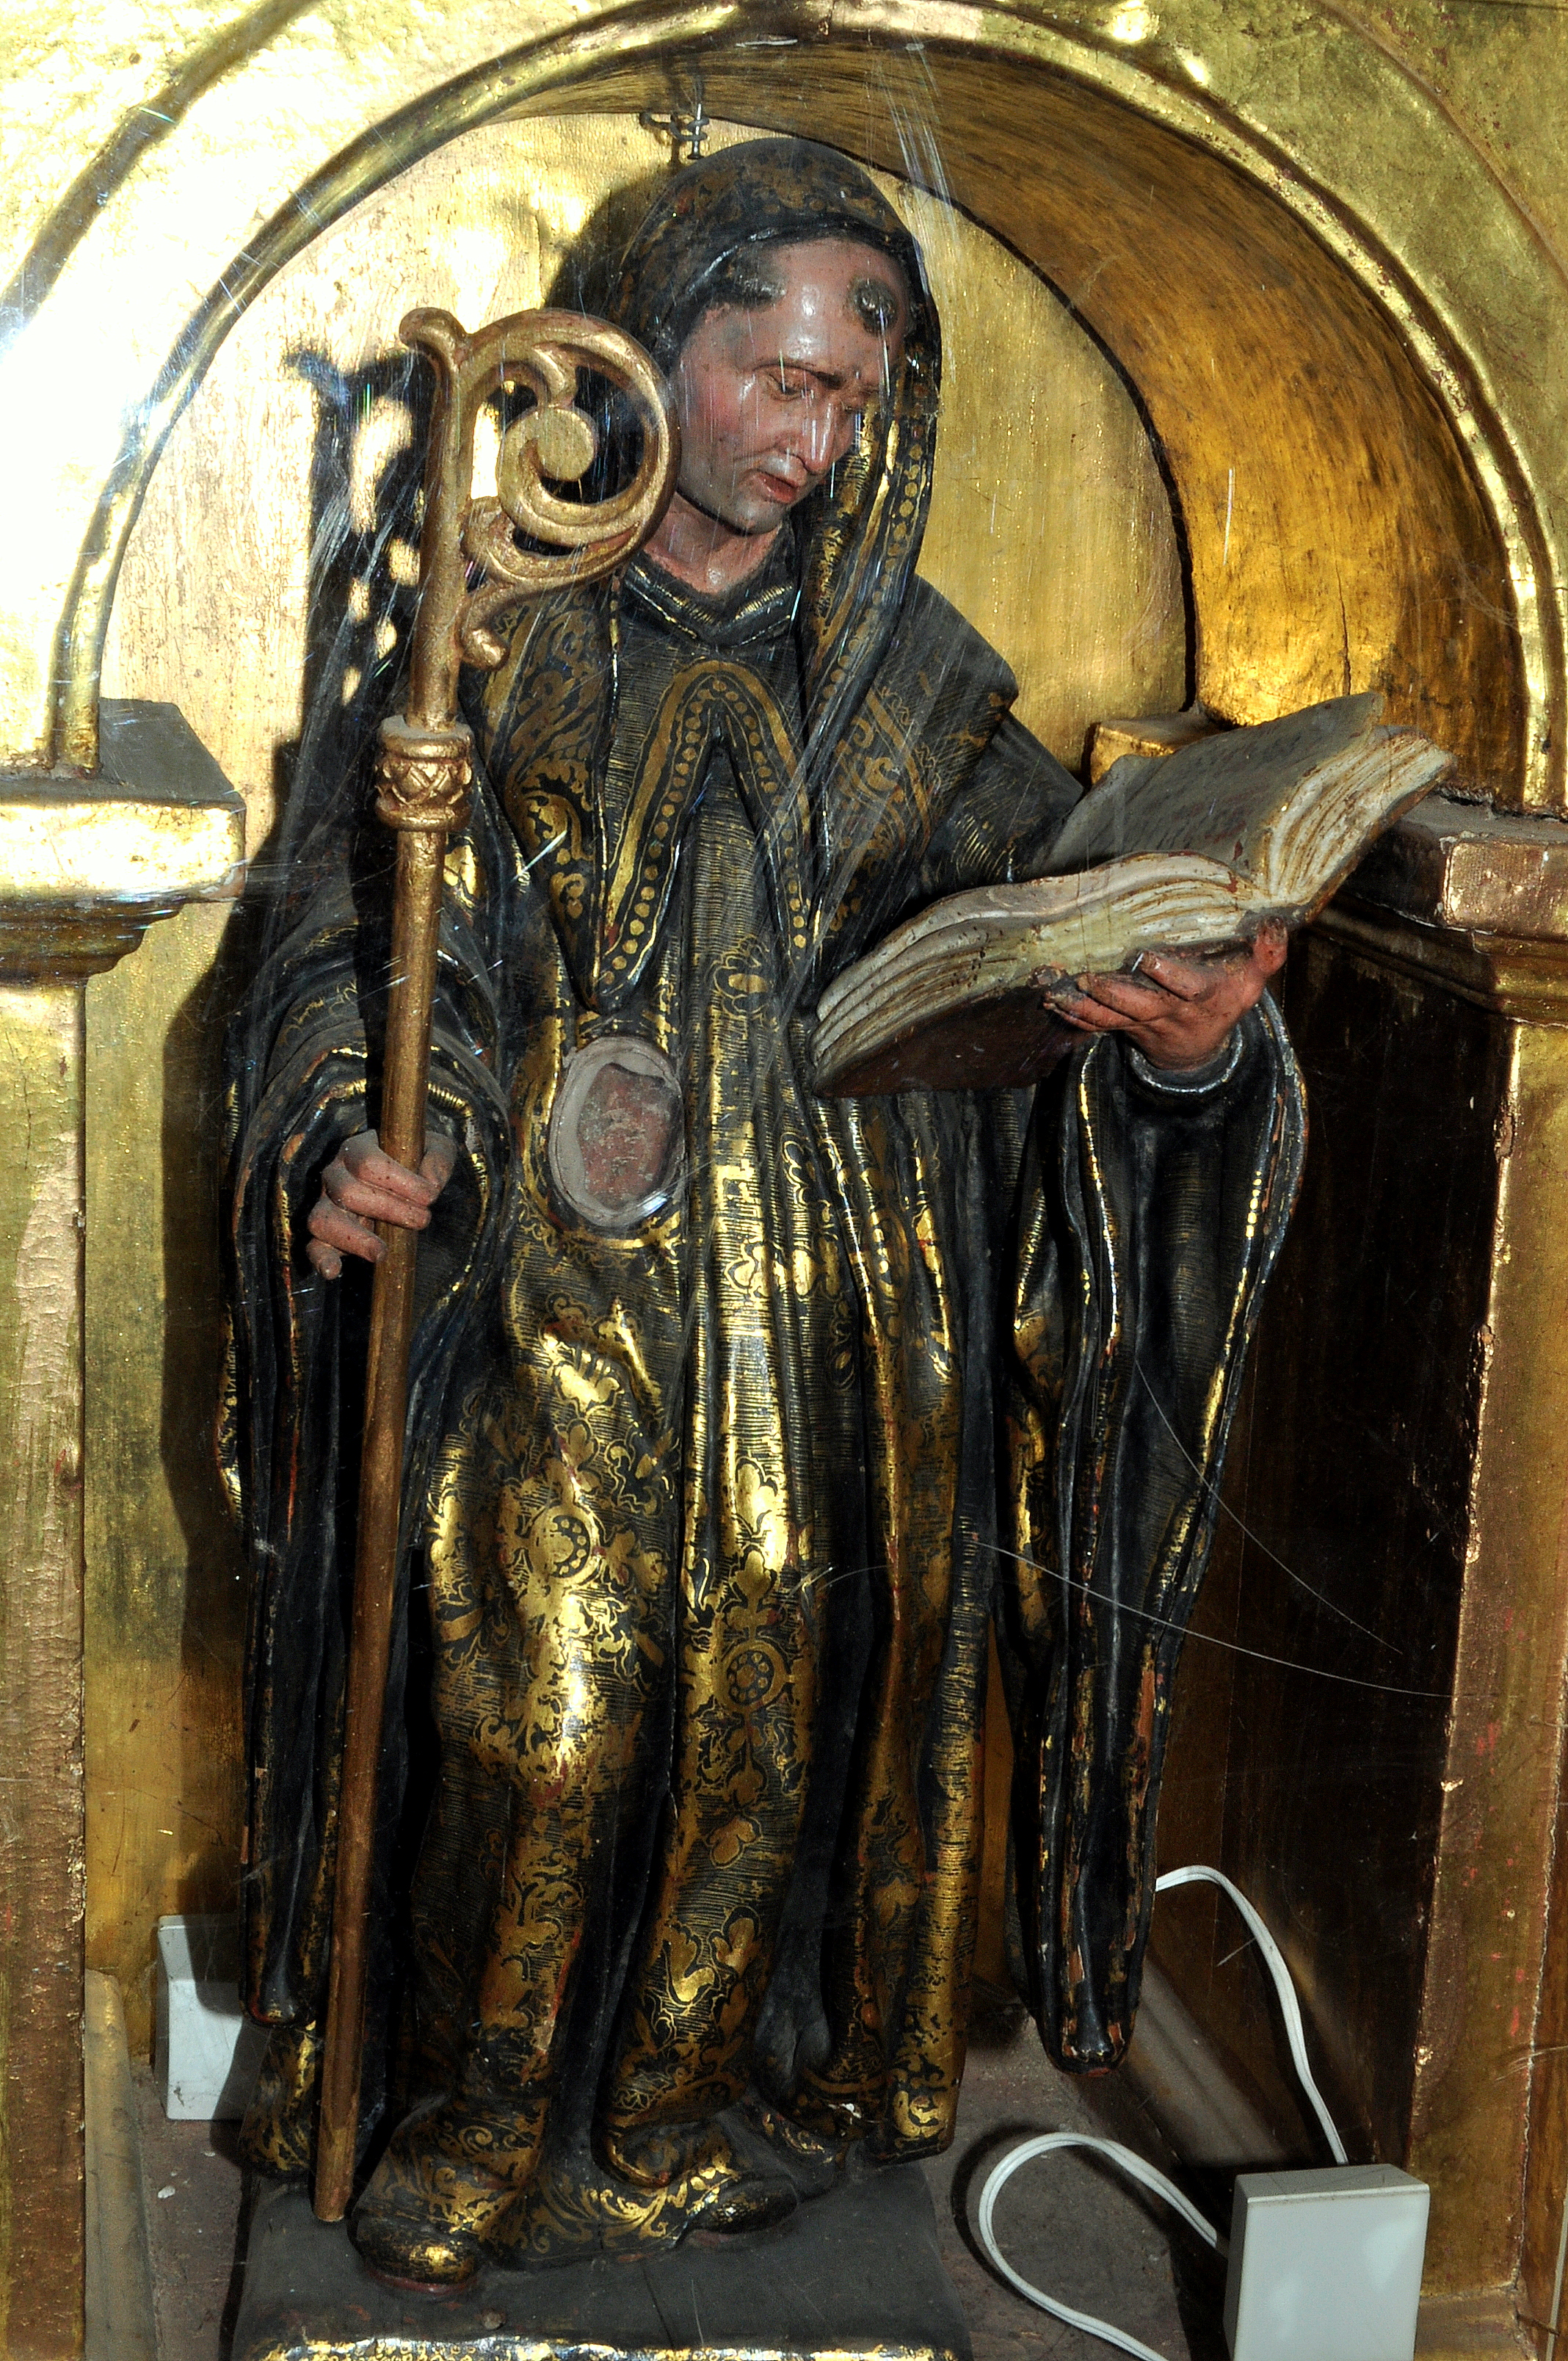 San Benito (s. XVII) del escultor berciano Tomás de Sierra. Pertenece a la gran colección de este autor conservada en el Museo Jesuitas de Villagarcía de Campos